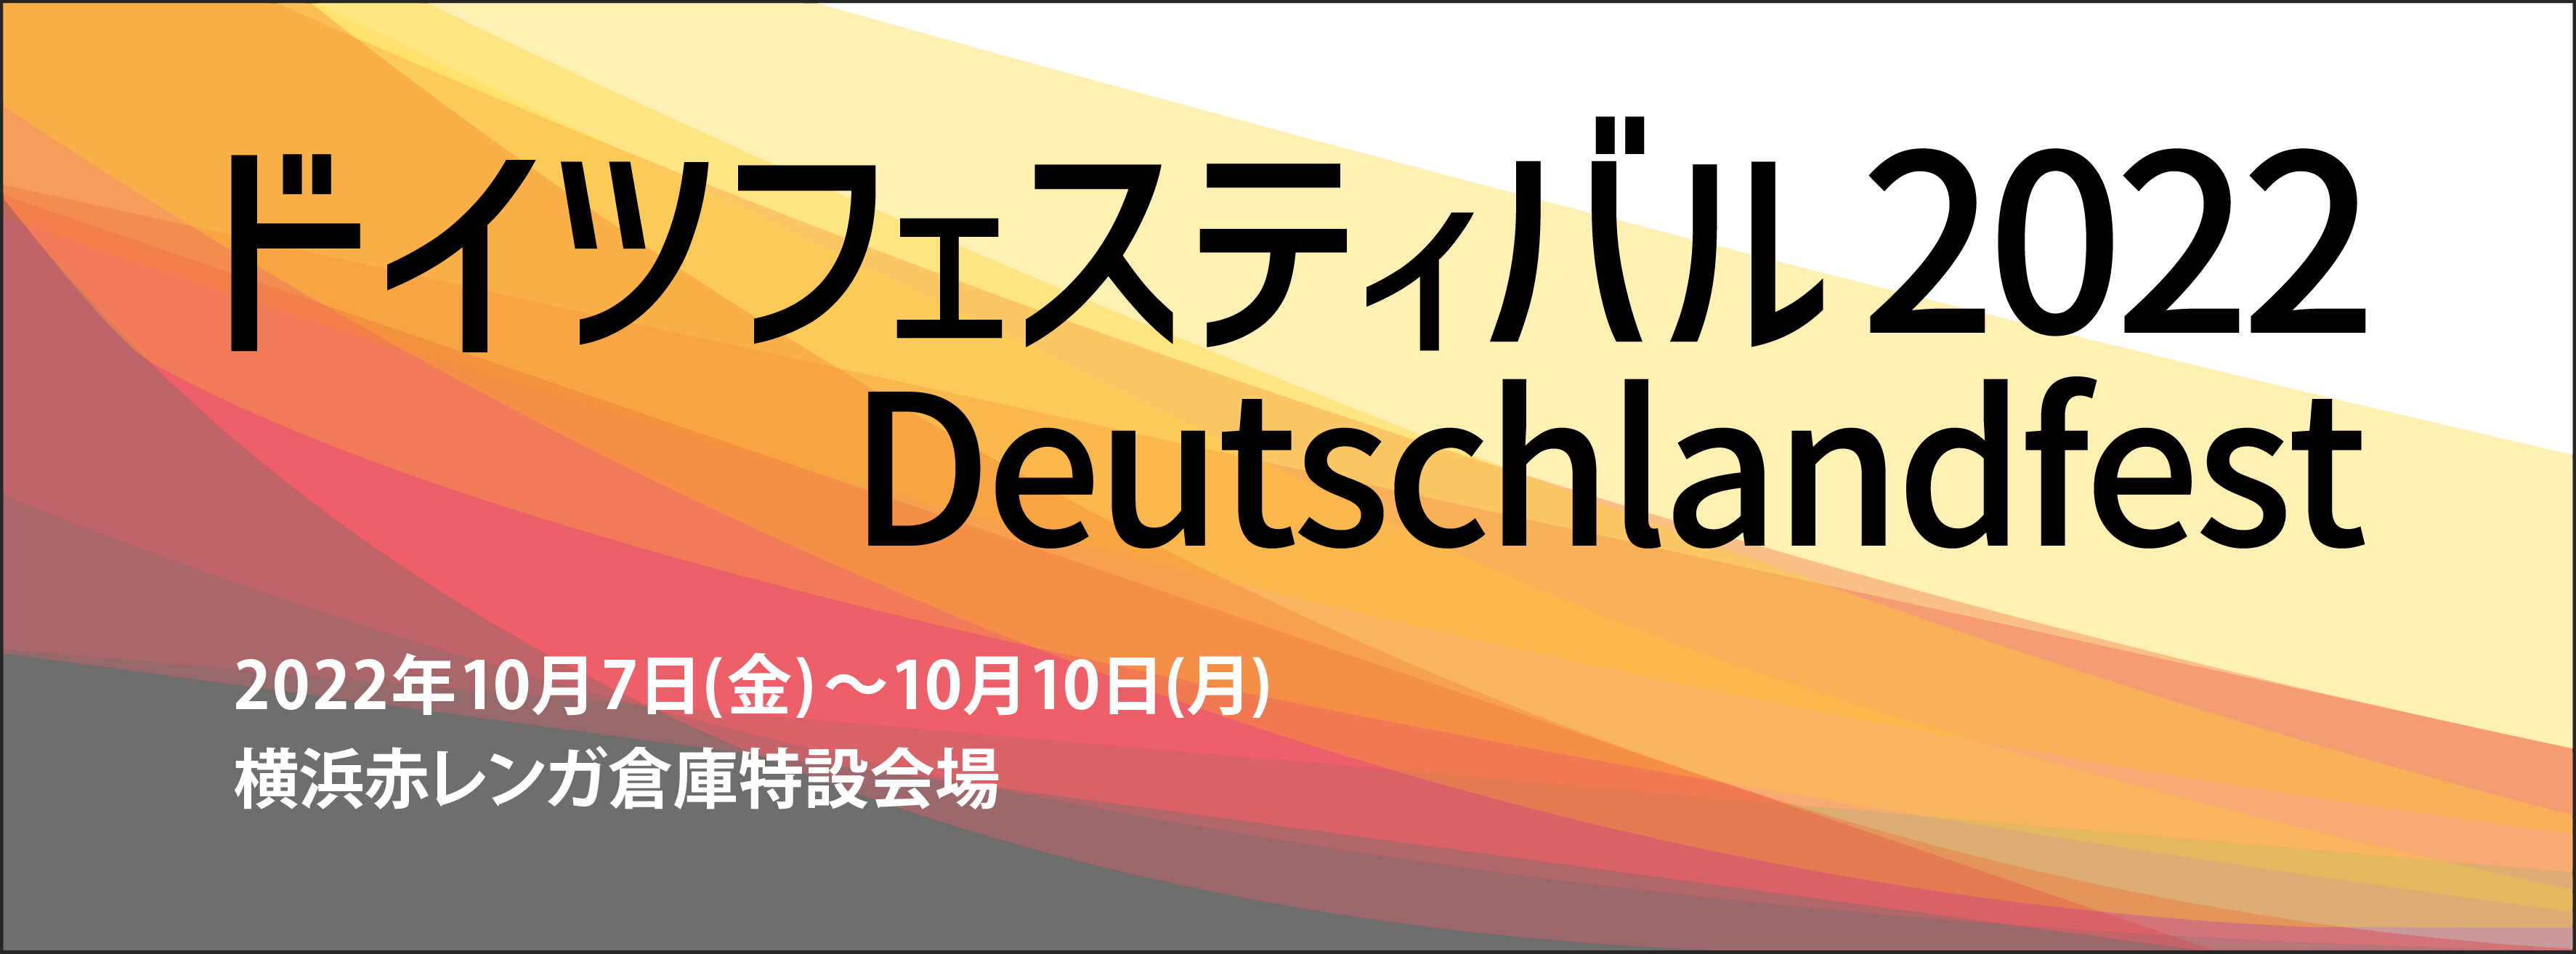 ドイツフェスティバル2022 Deutschlandfest 2022年10月7日（金）〜10月10日（月）横浜赤レンガ倉庫特設会場